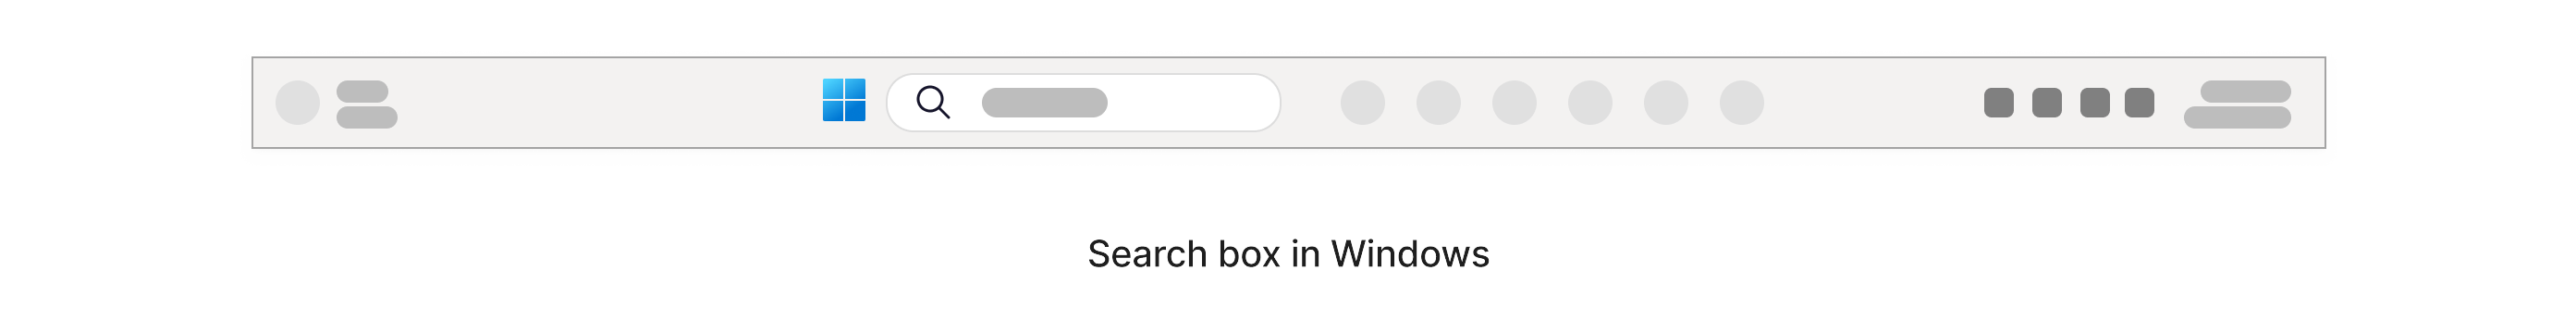 Zone de recherche avec une icône de loupe située dans la barre des tâches Windows en bas de l’écran.